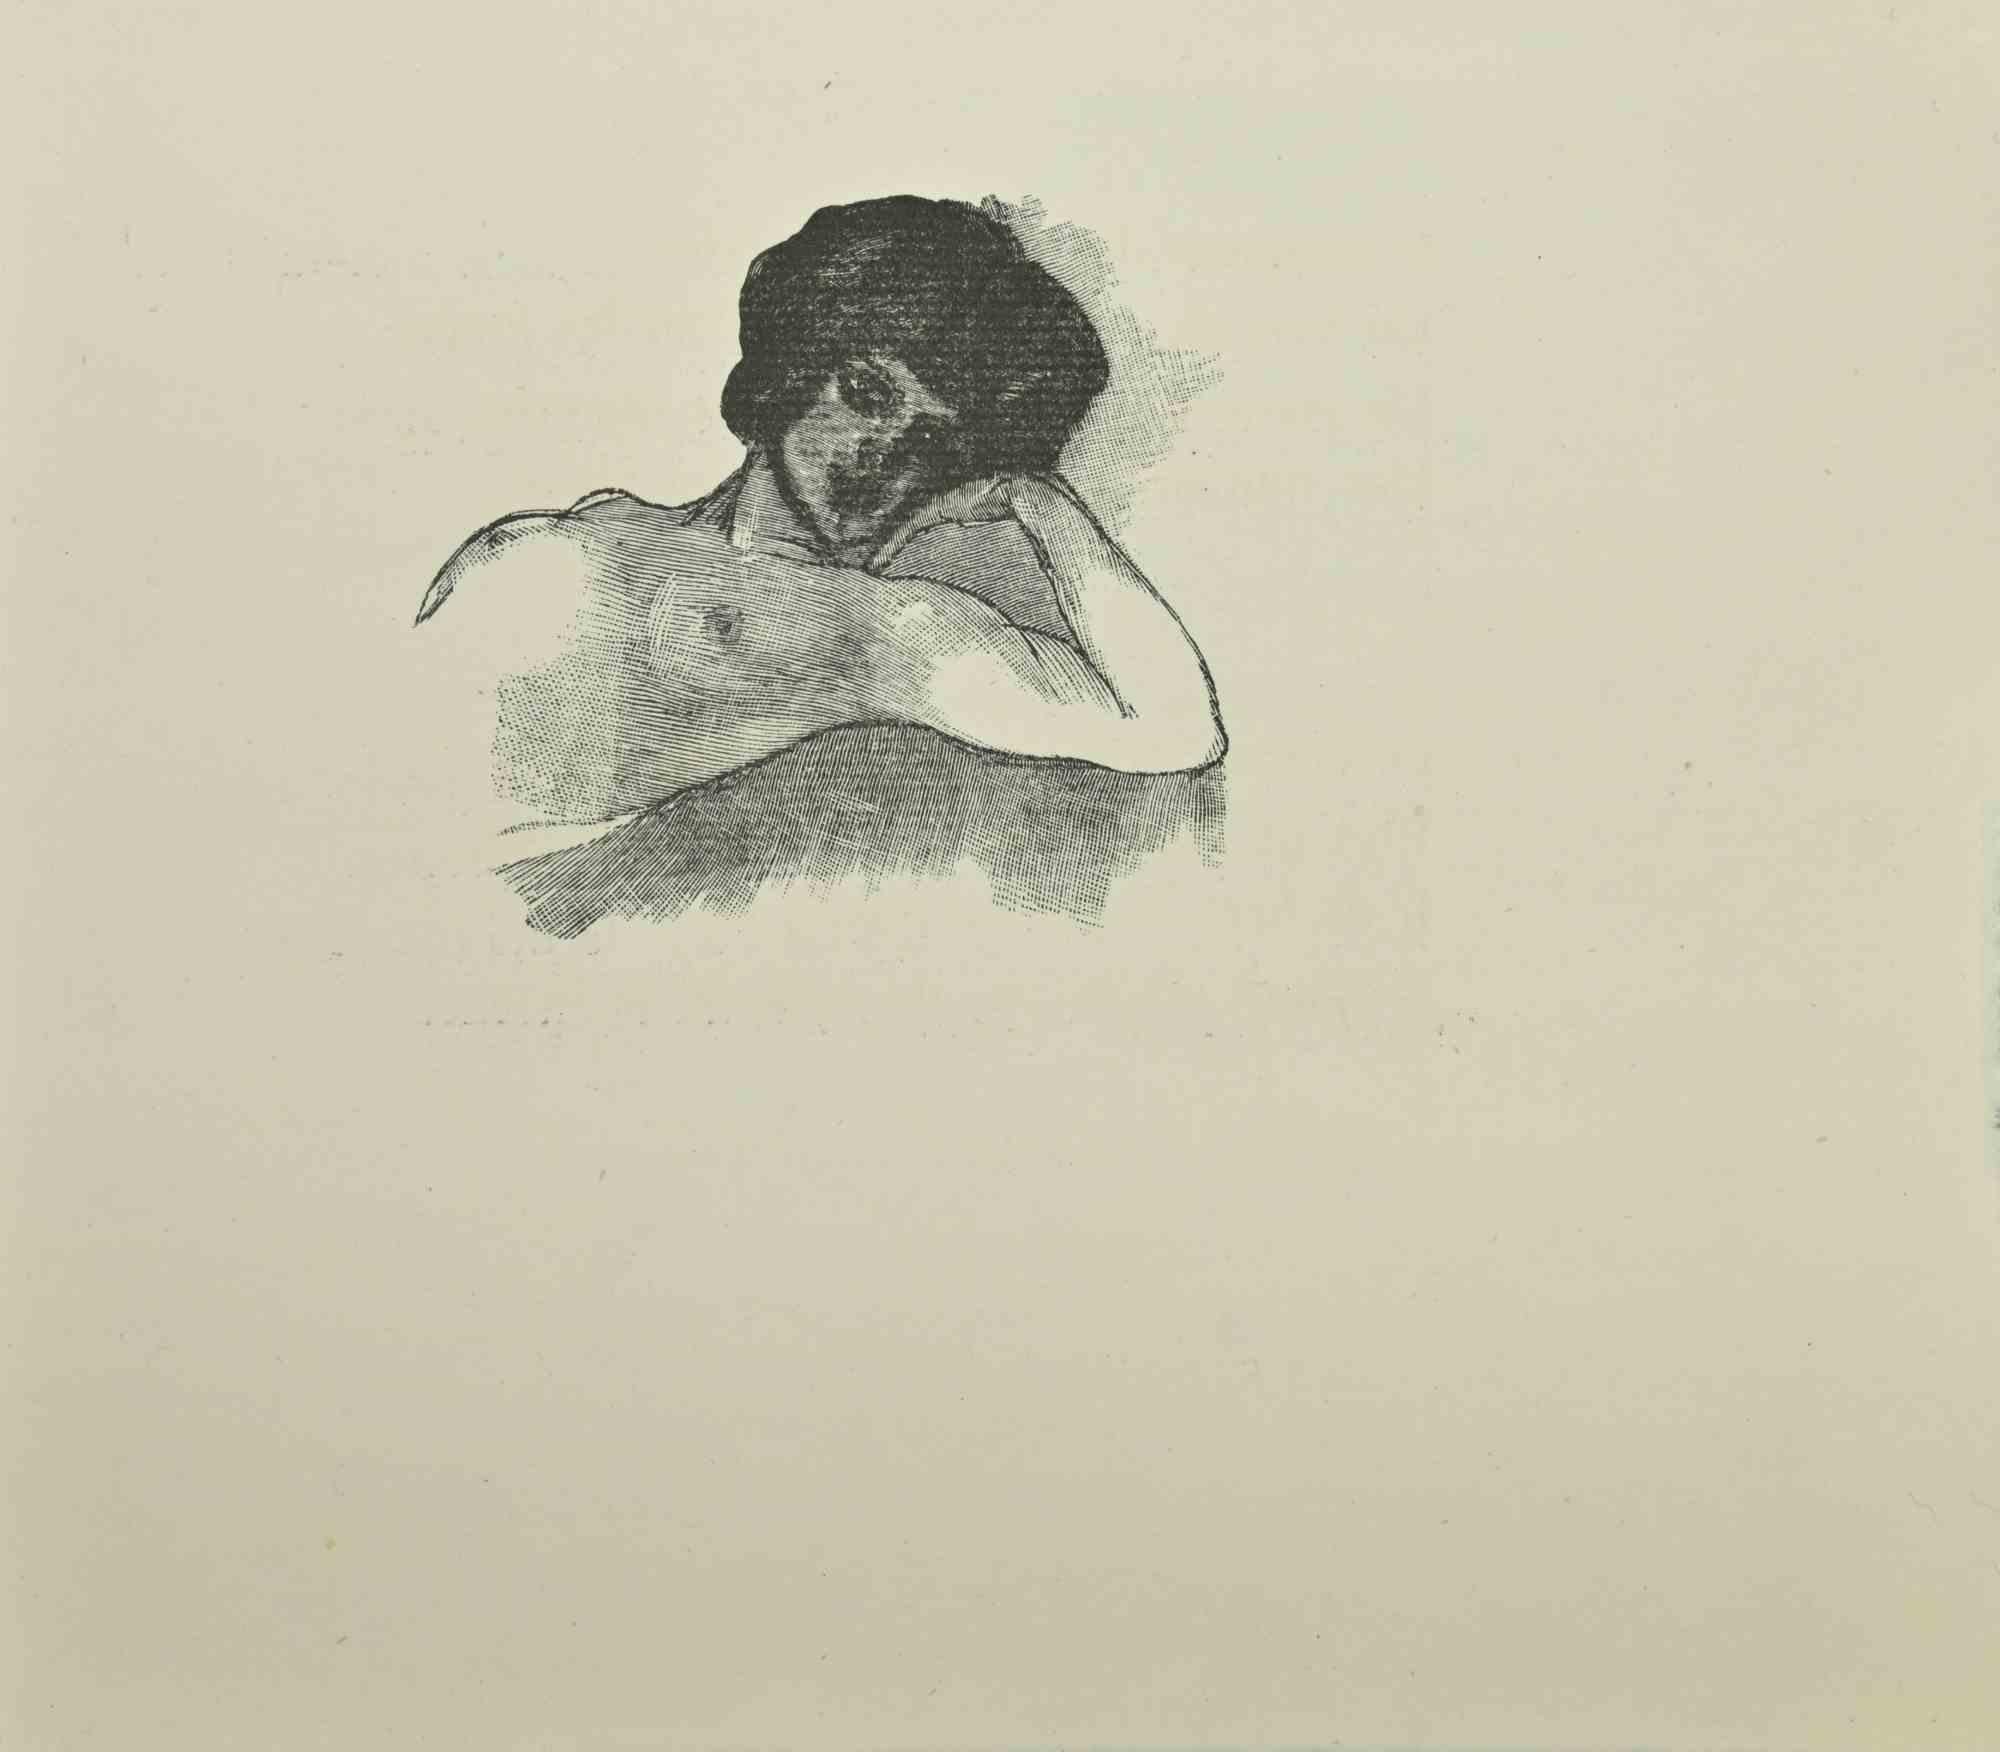 Le Nu est une gravure sur bois imprimée sur papier, réalisée d'après Jean Paul Sauget pour Les Soirs d'Opium de Maurice Magre.

Publié en 1921.

Bonnes conditions.